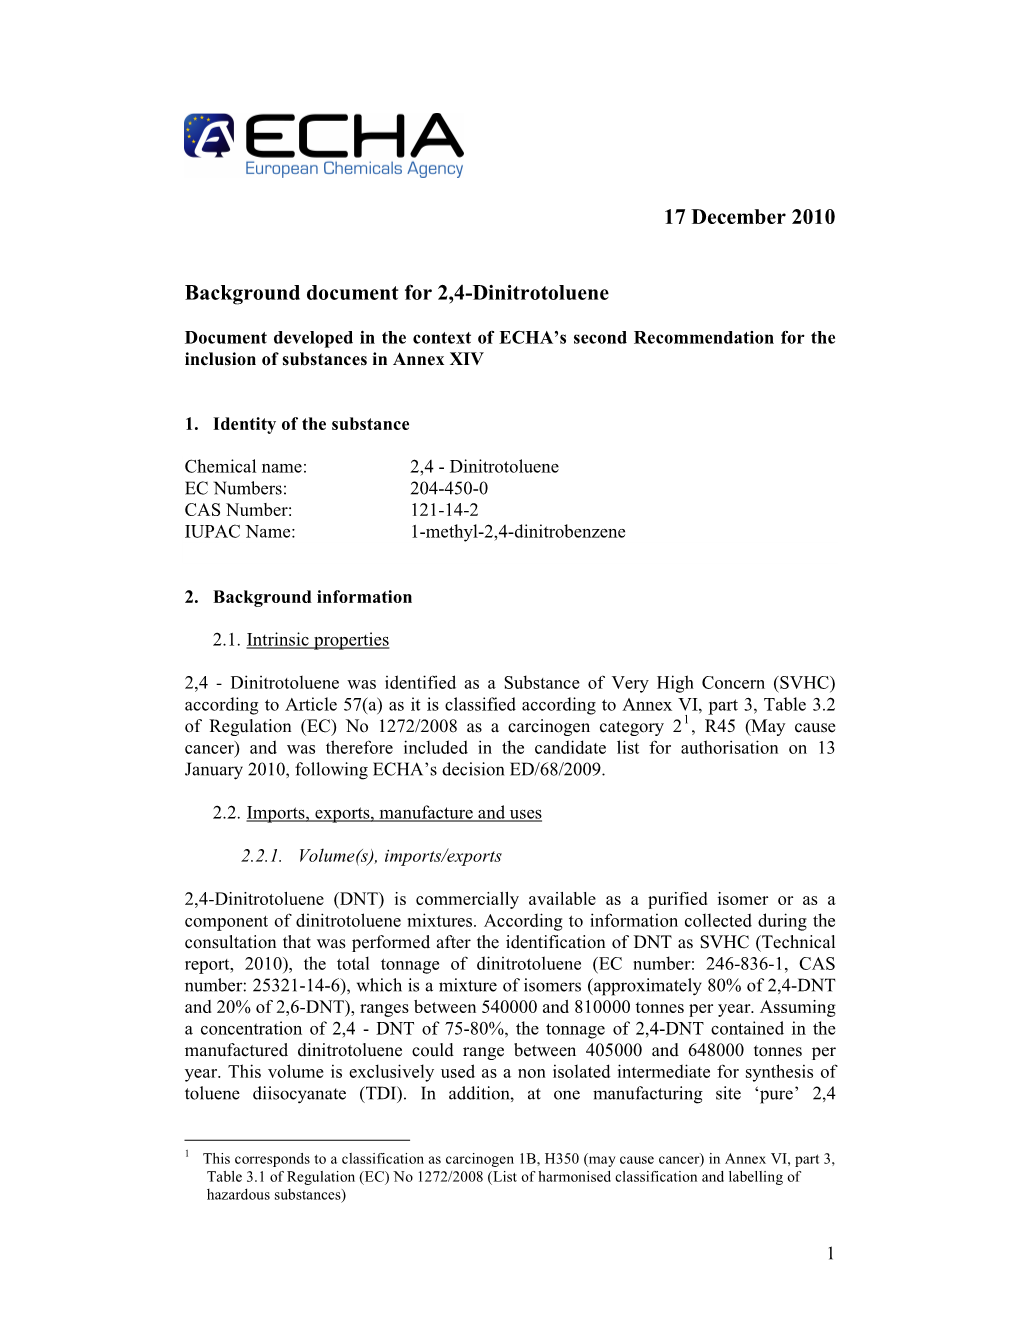 17 December 2010 Background Document for 2,4-Dinitrotoluene